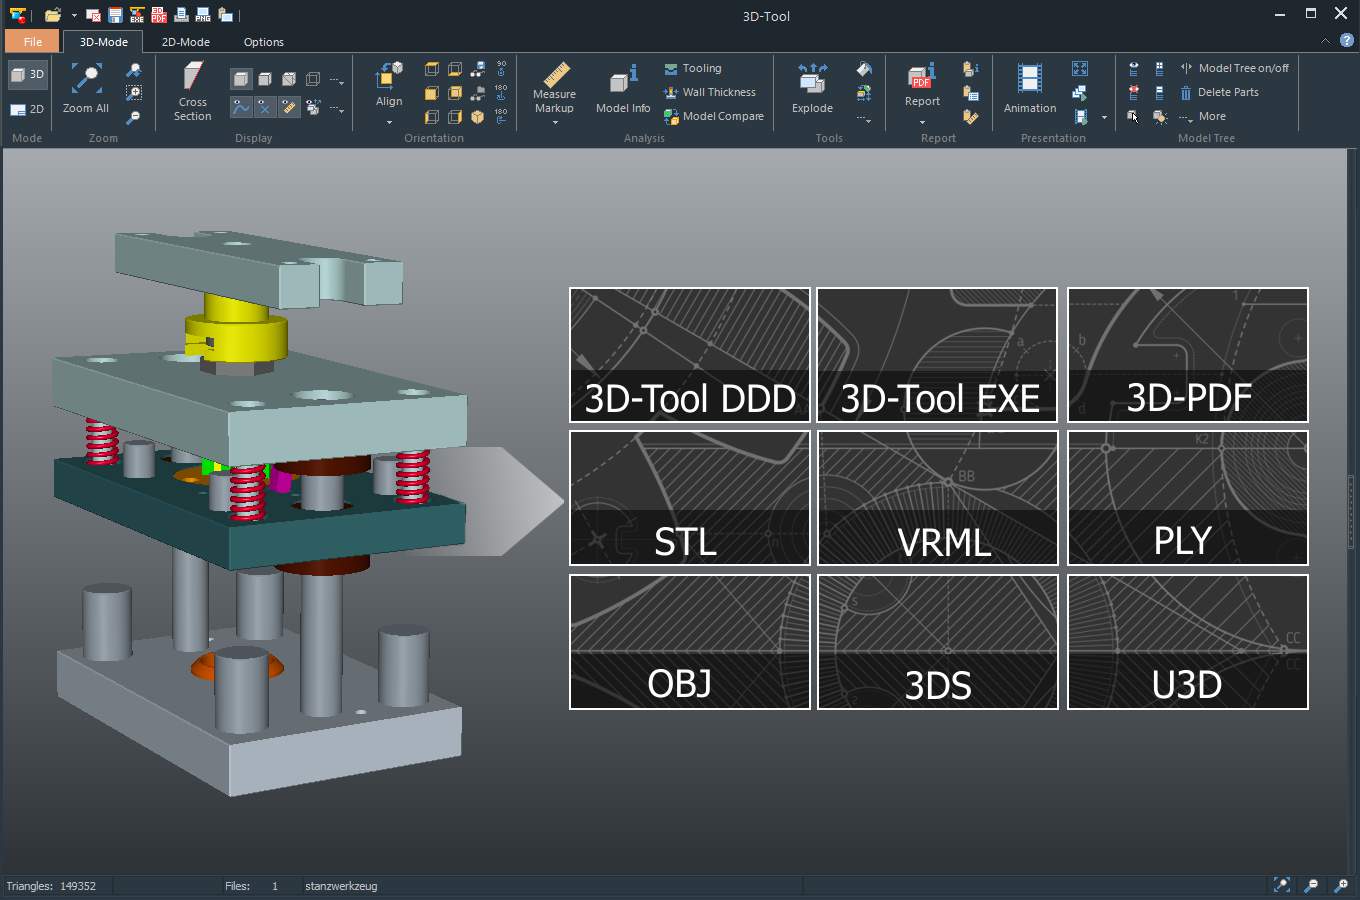 Erzeugen von 3D-PDF, STL, VRML, PLY, OBJ, 3DS und U3D - Dateien